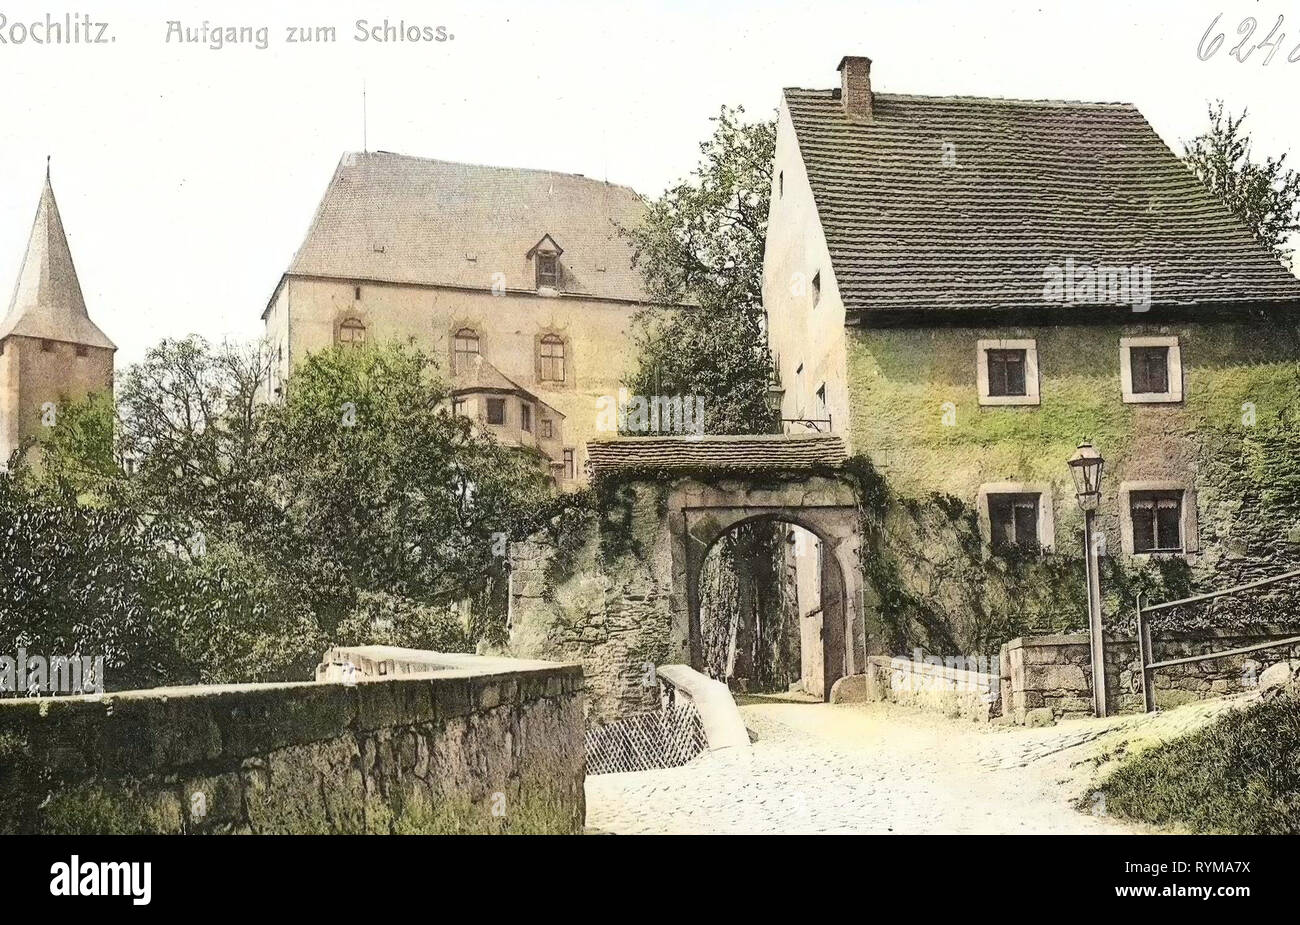 Schloss Rochlitz, Gates en Saxe, 1905, Landkreis Mittelsachsen, Rochlitz, Aufgang zum Schloß, Allemagne Banque D'Images